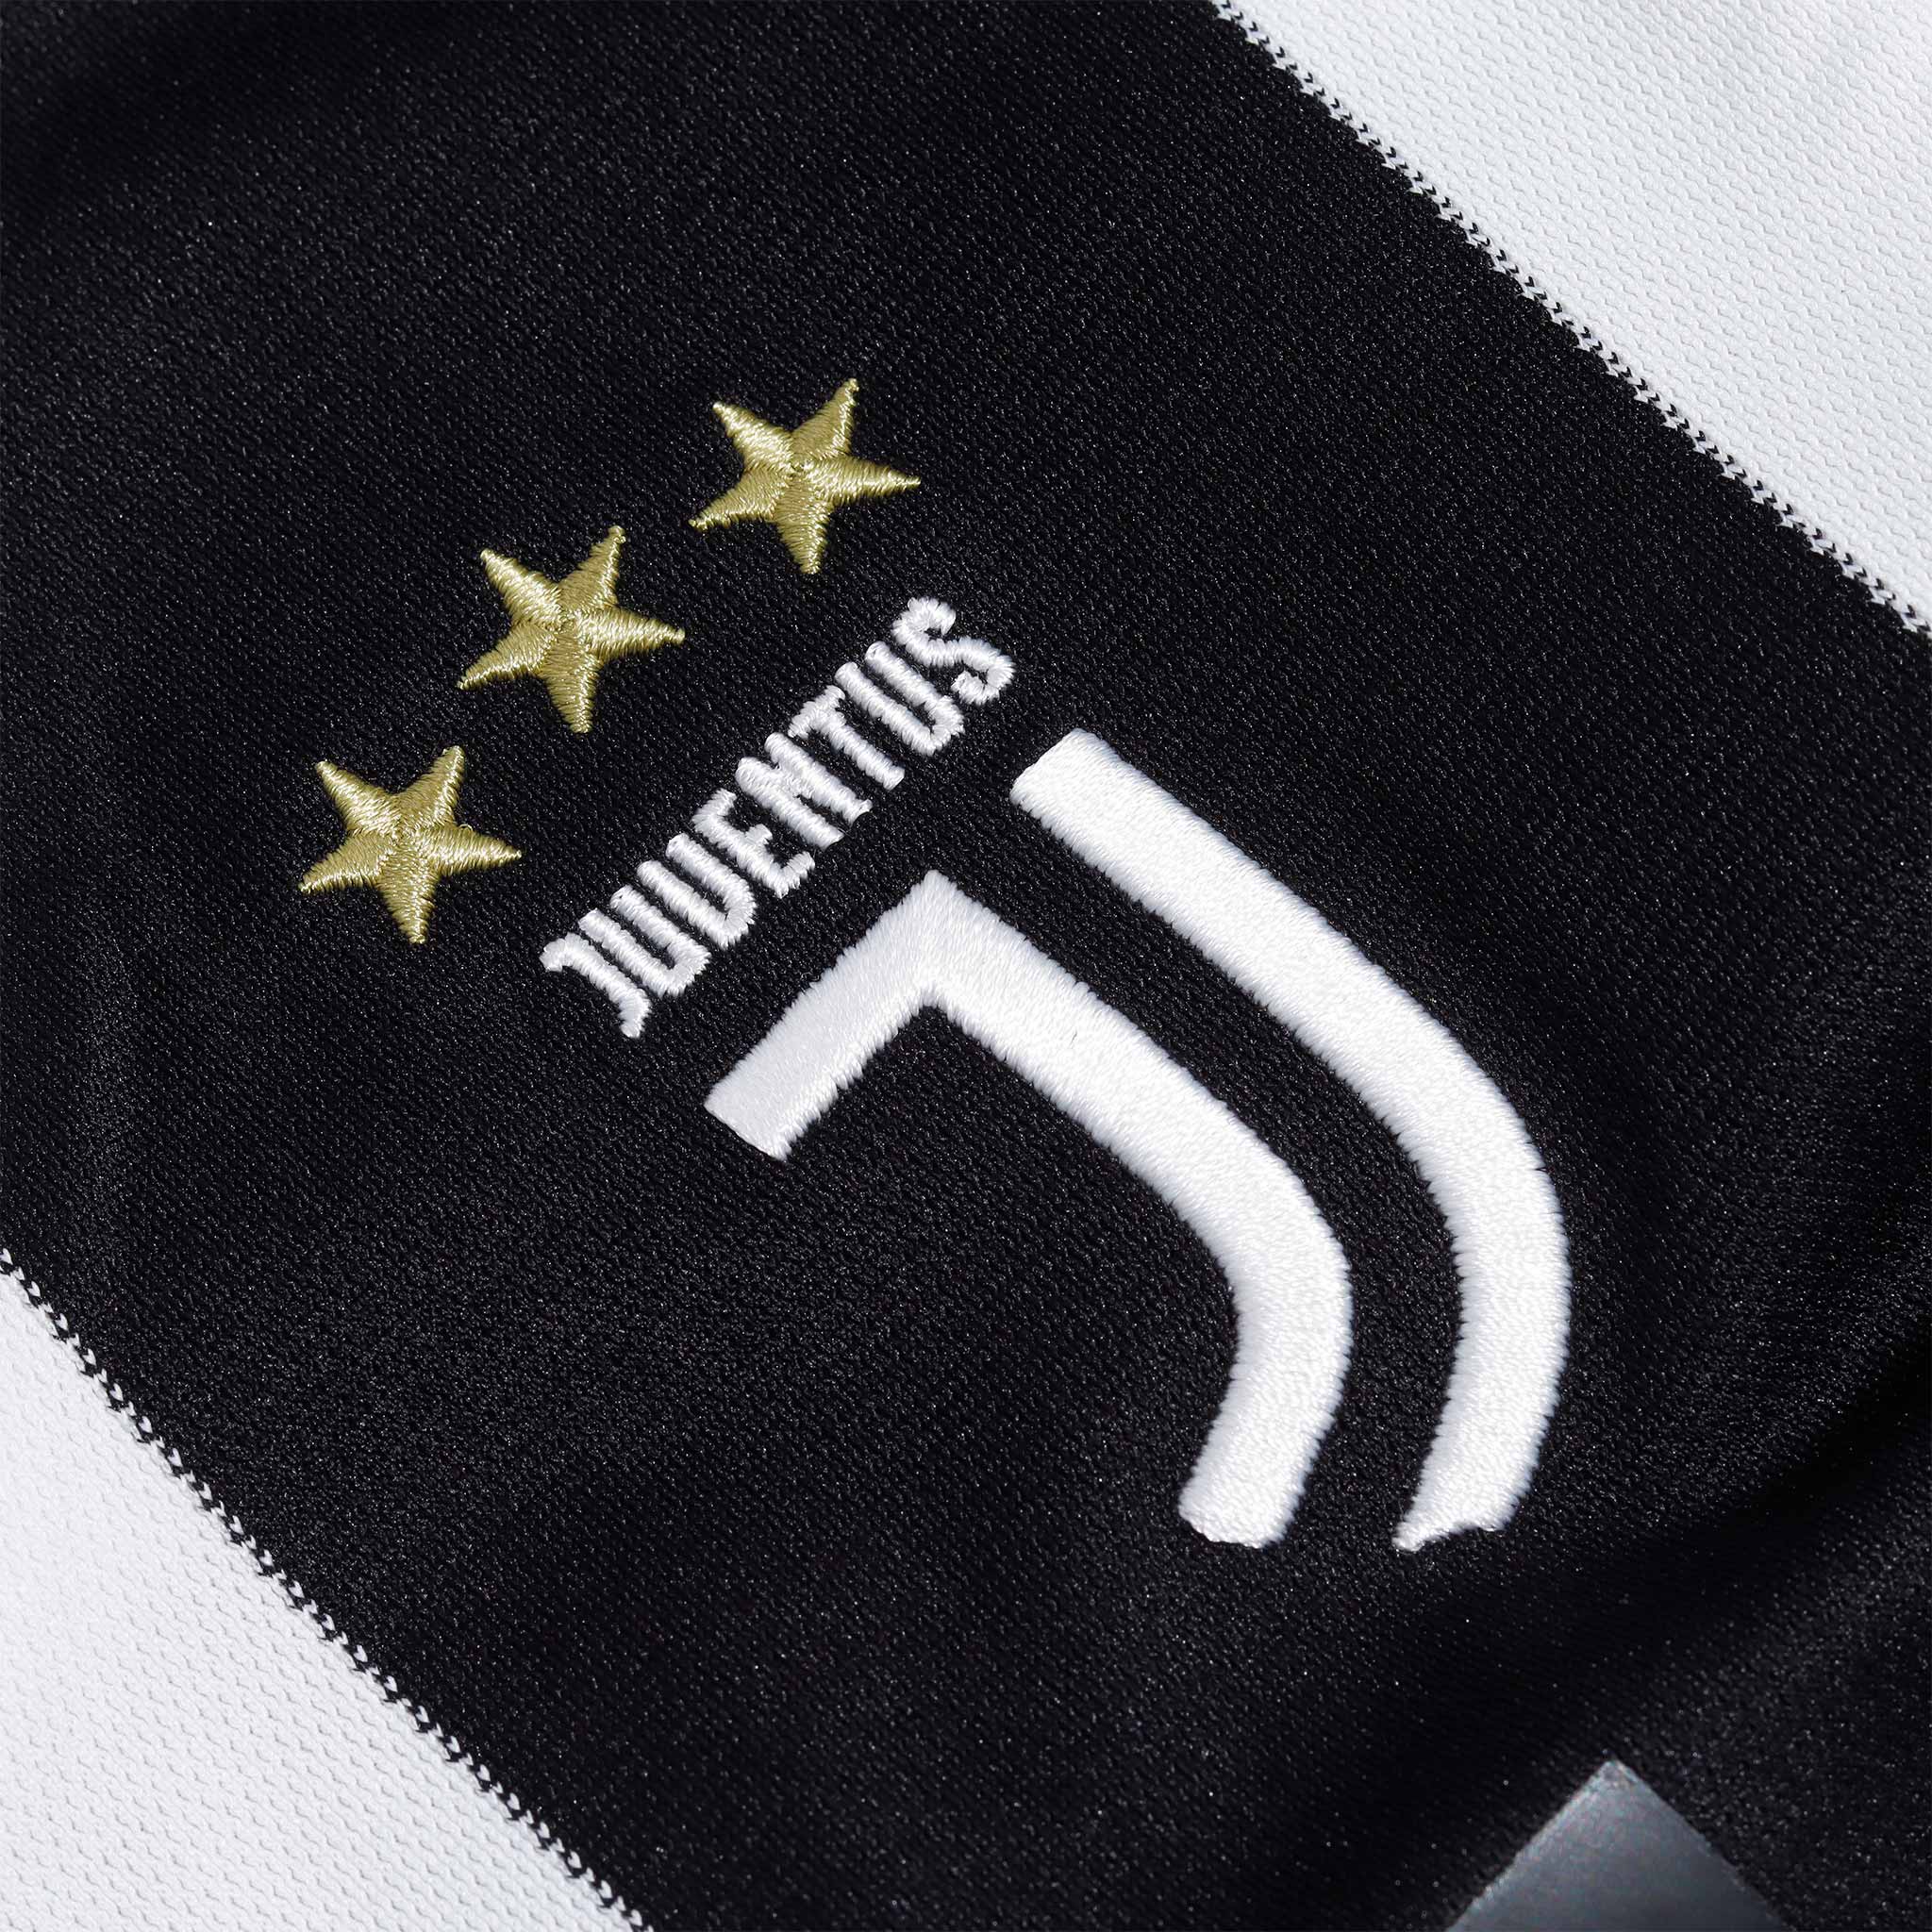 Jersey Adidas Juventus